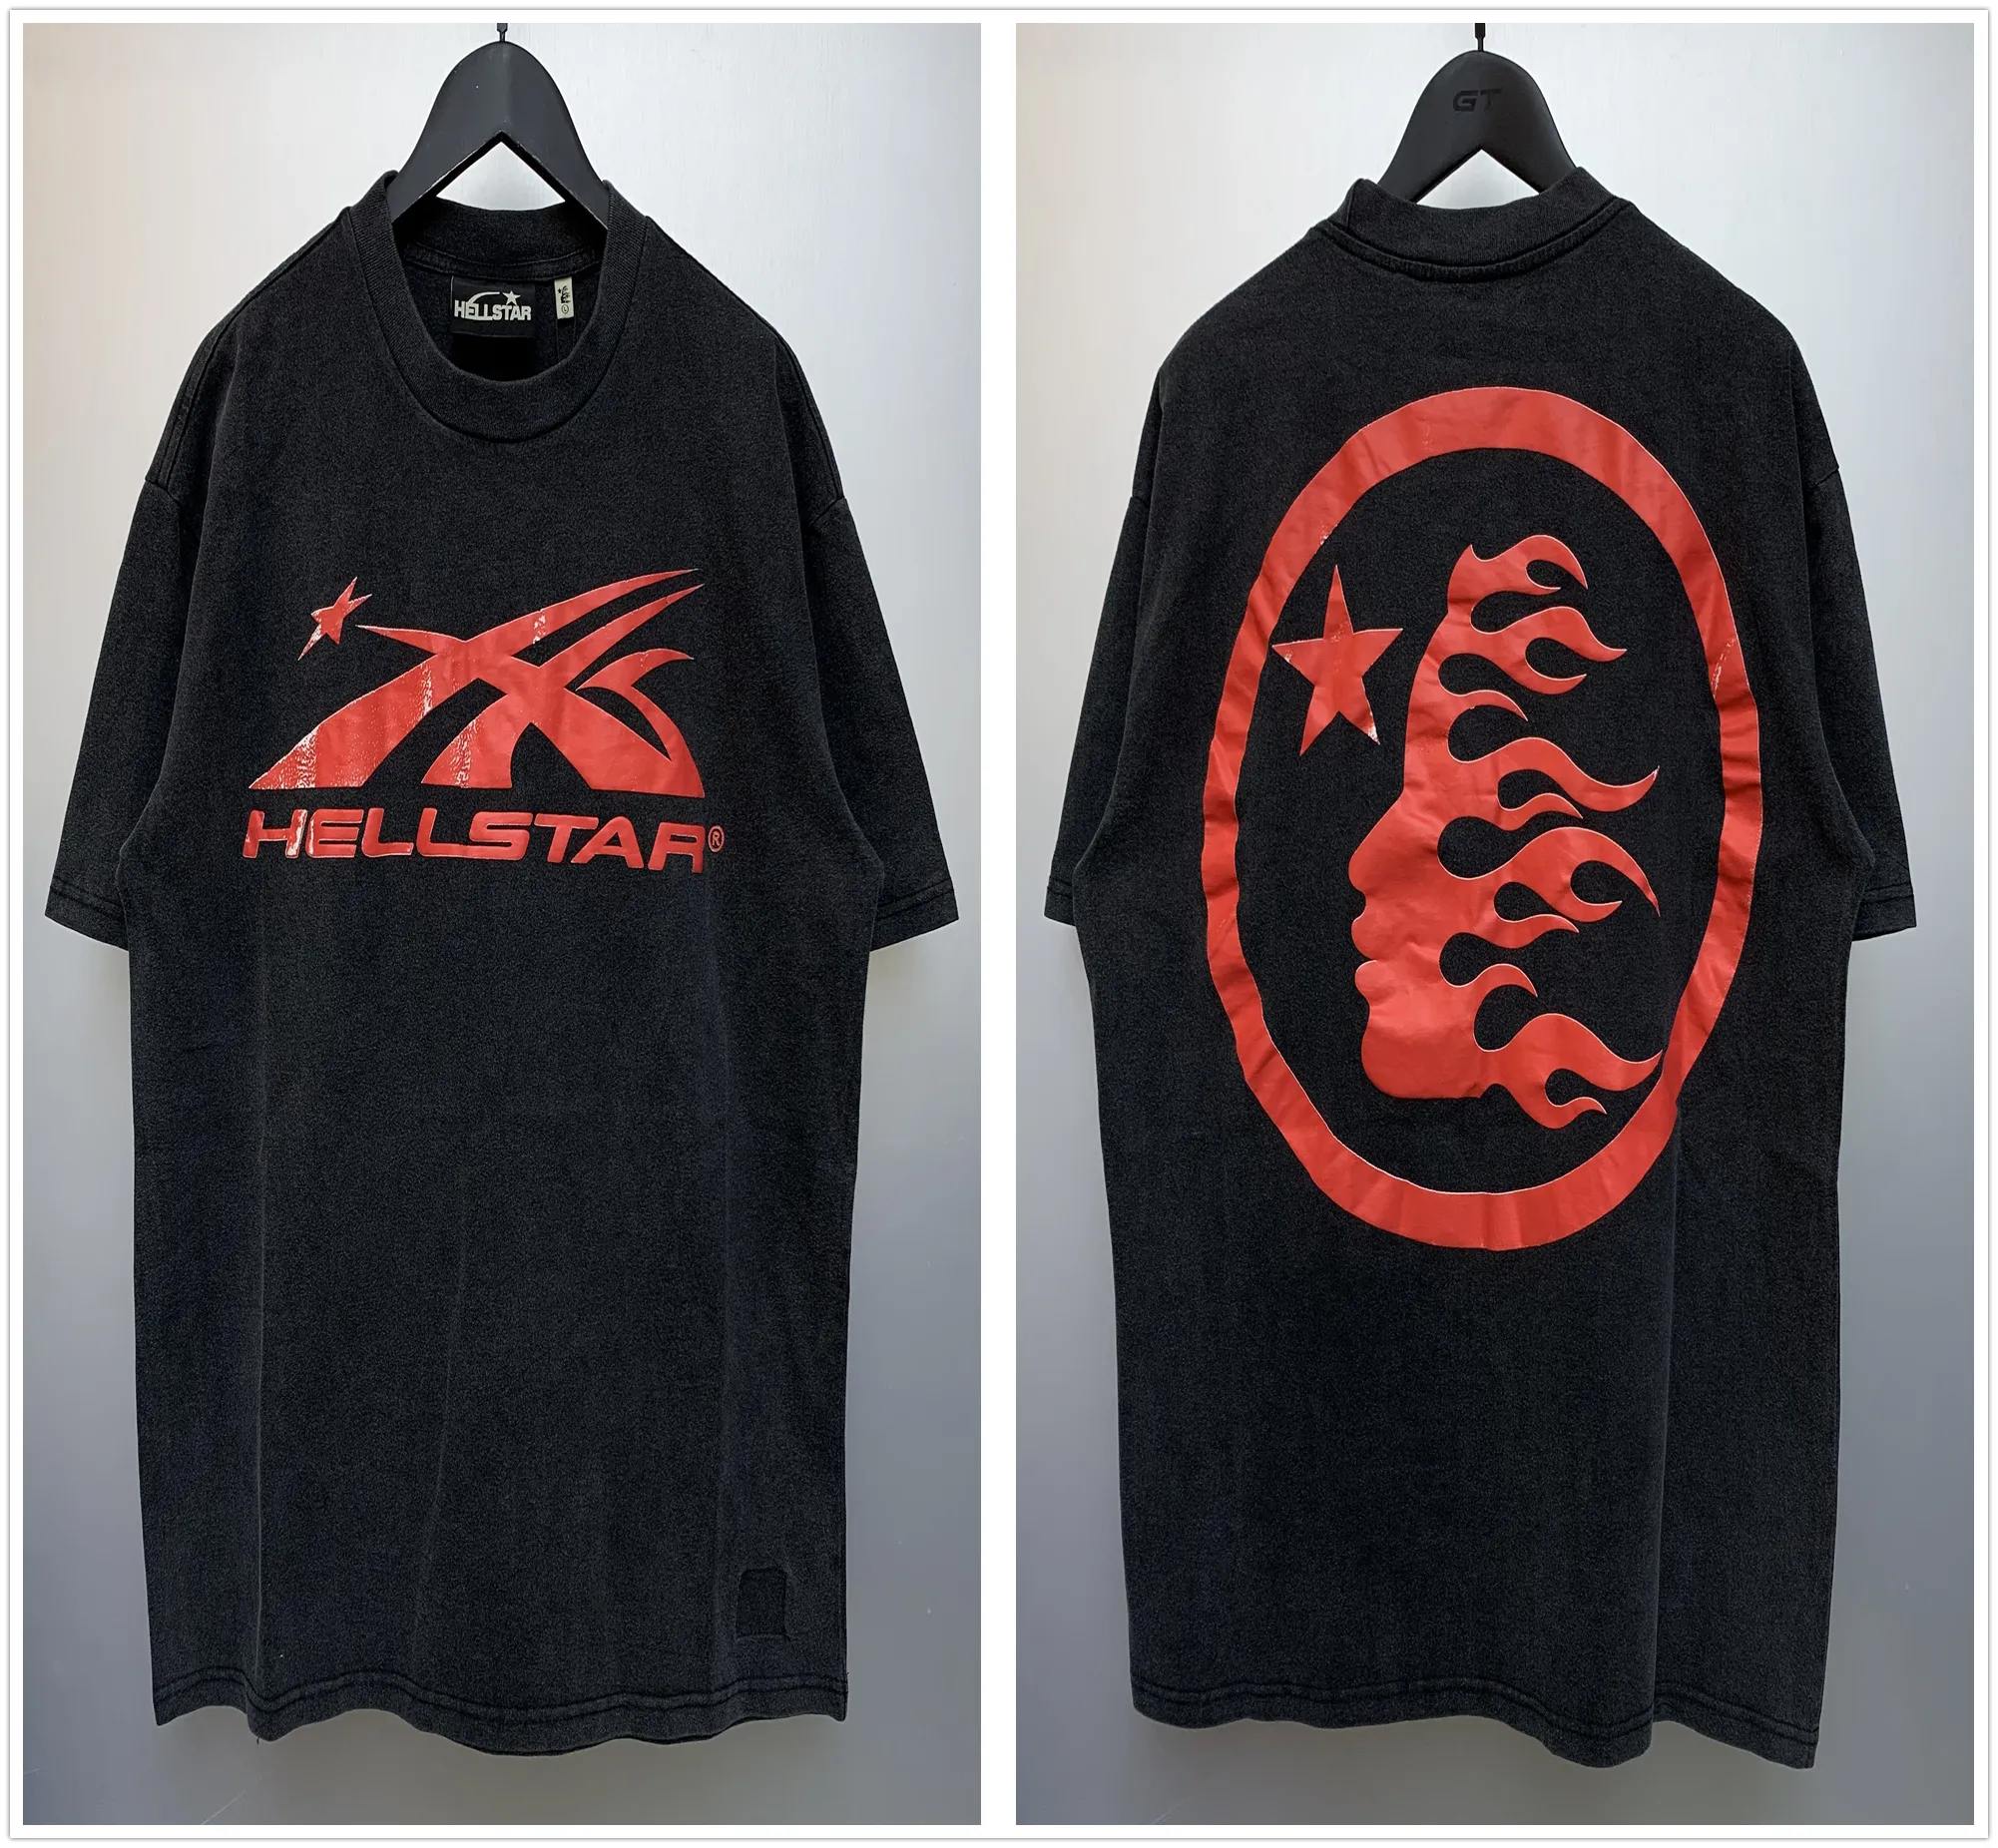 HellStar Shirt Designerfashion T koszulka graficzna odzież ubrania Hipster vintage myjony tkanina uliczna graffiti styl pęknięcia geometryczne wzór tops6rtl